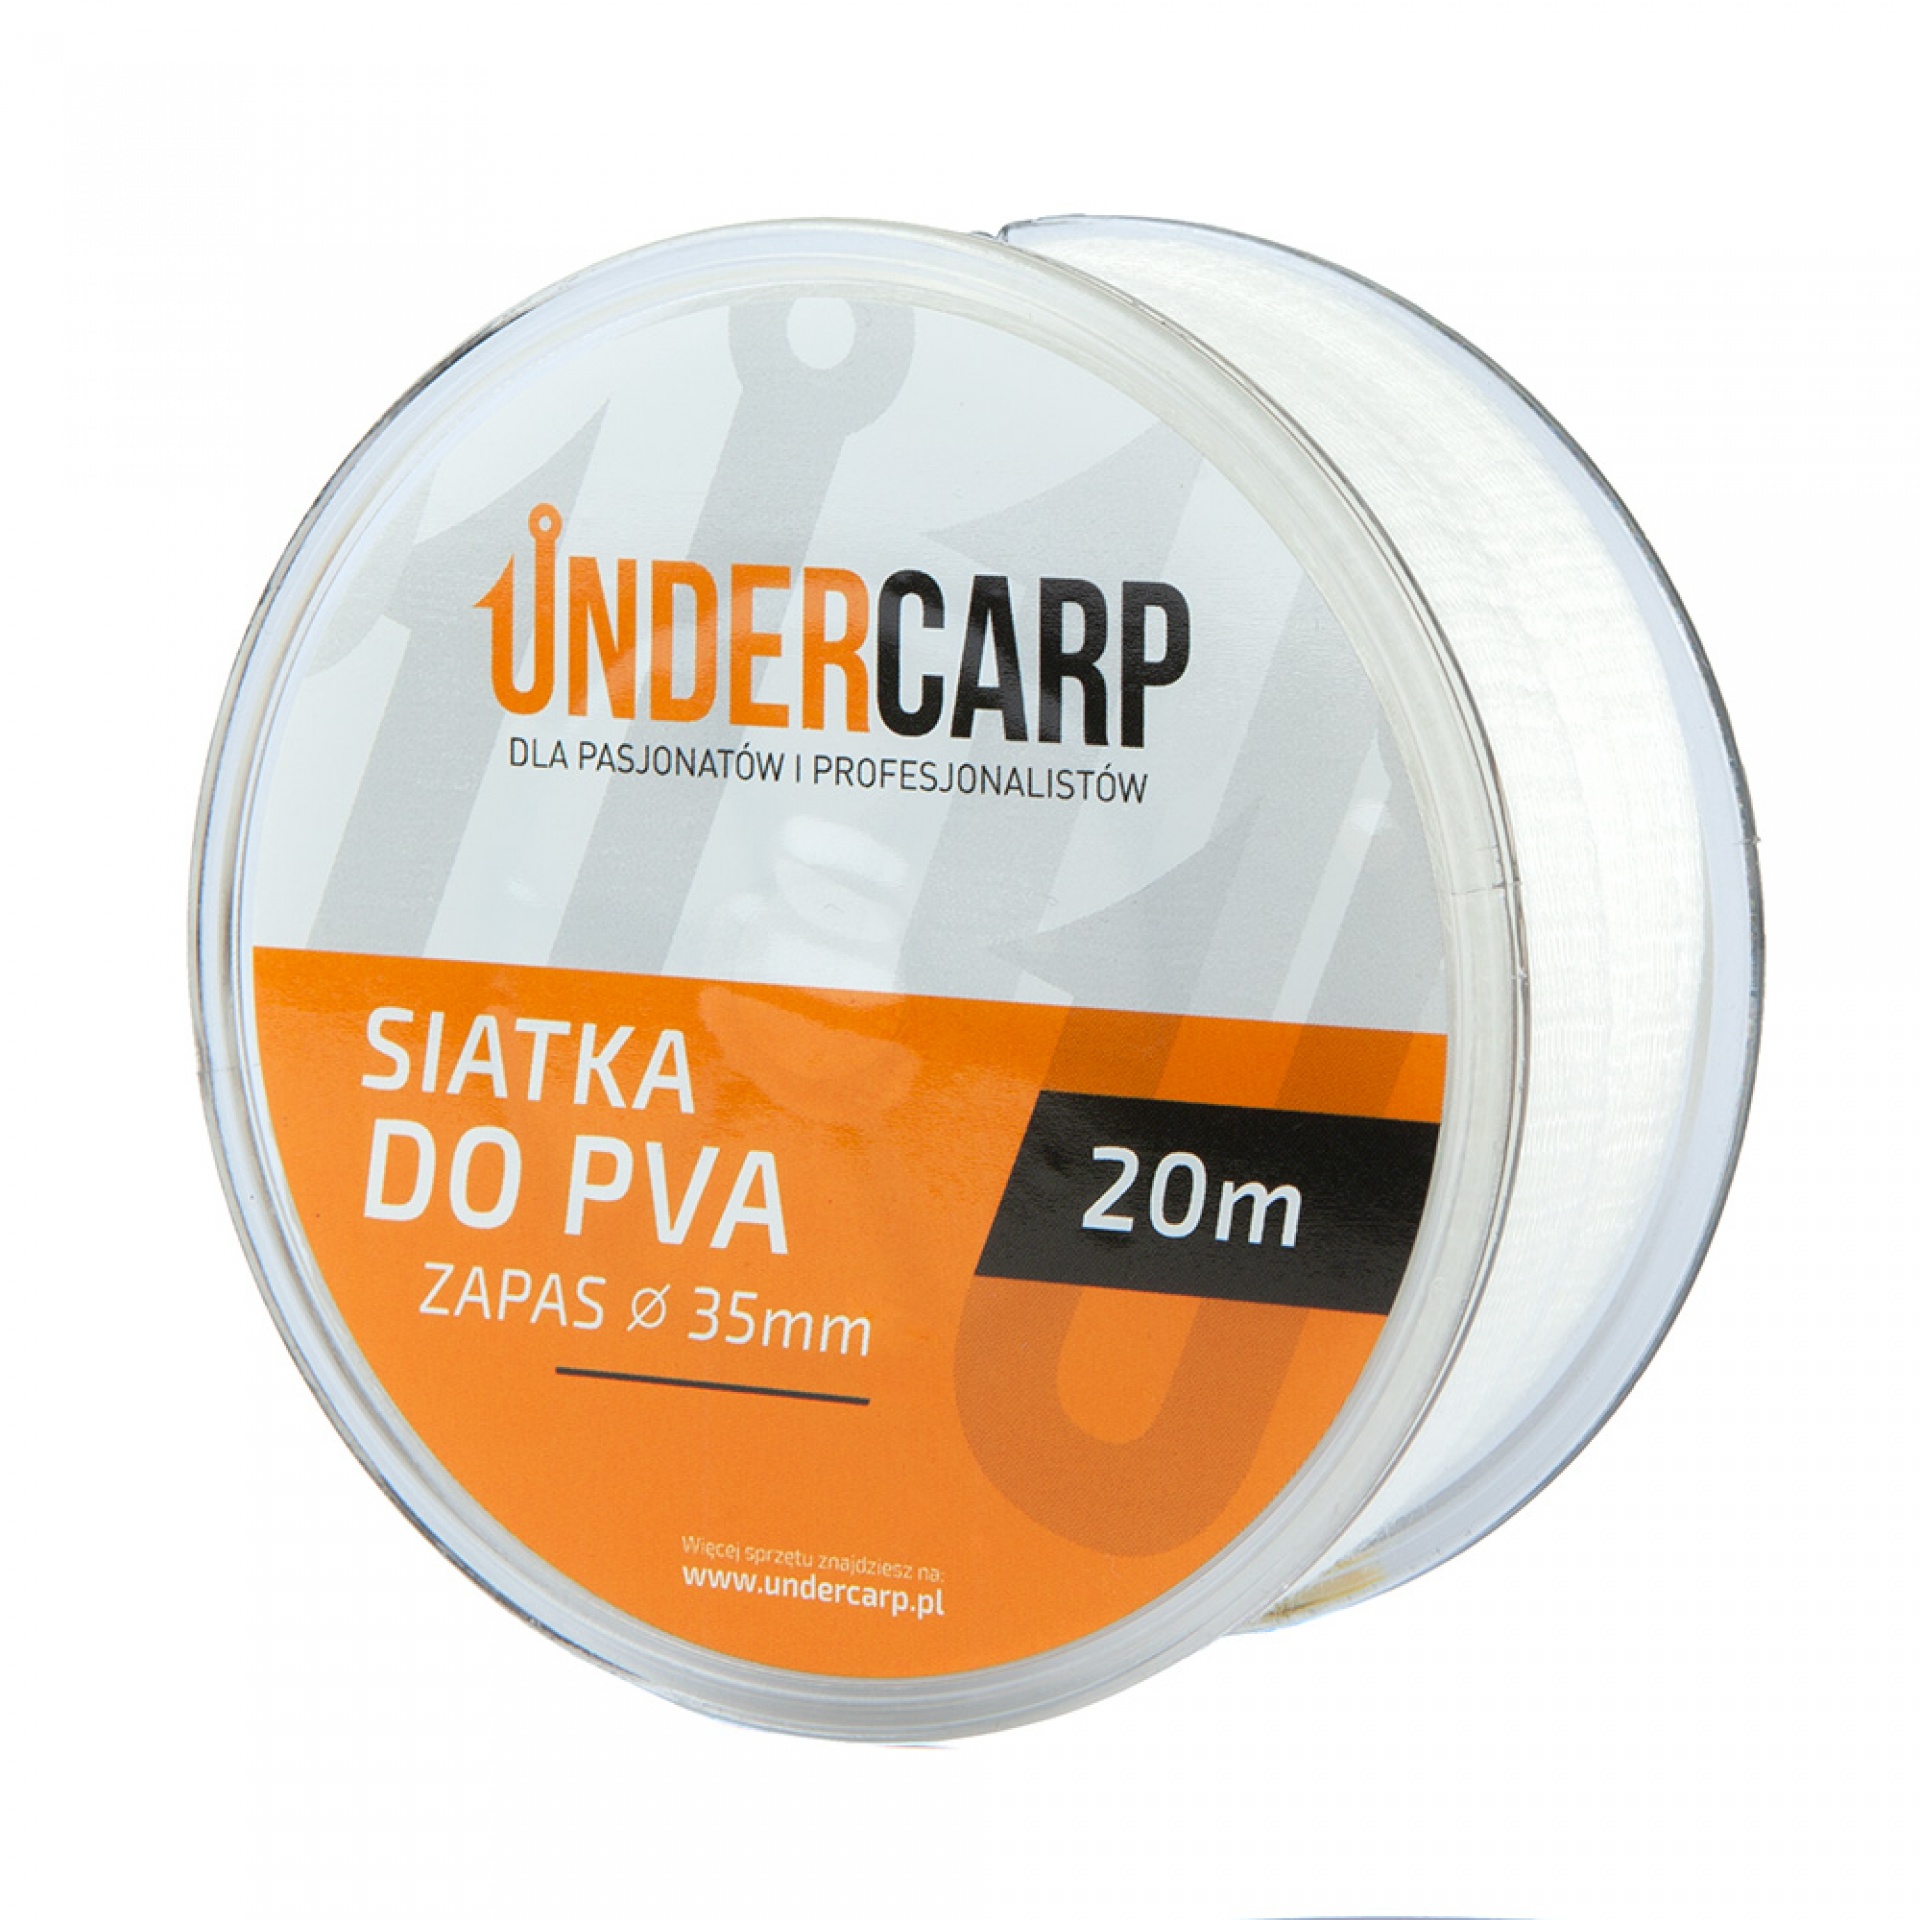 UnderCarp - Filet de Remplacement PVA 35mm 20m